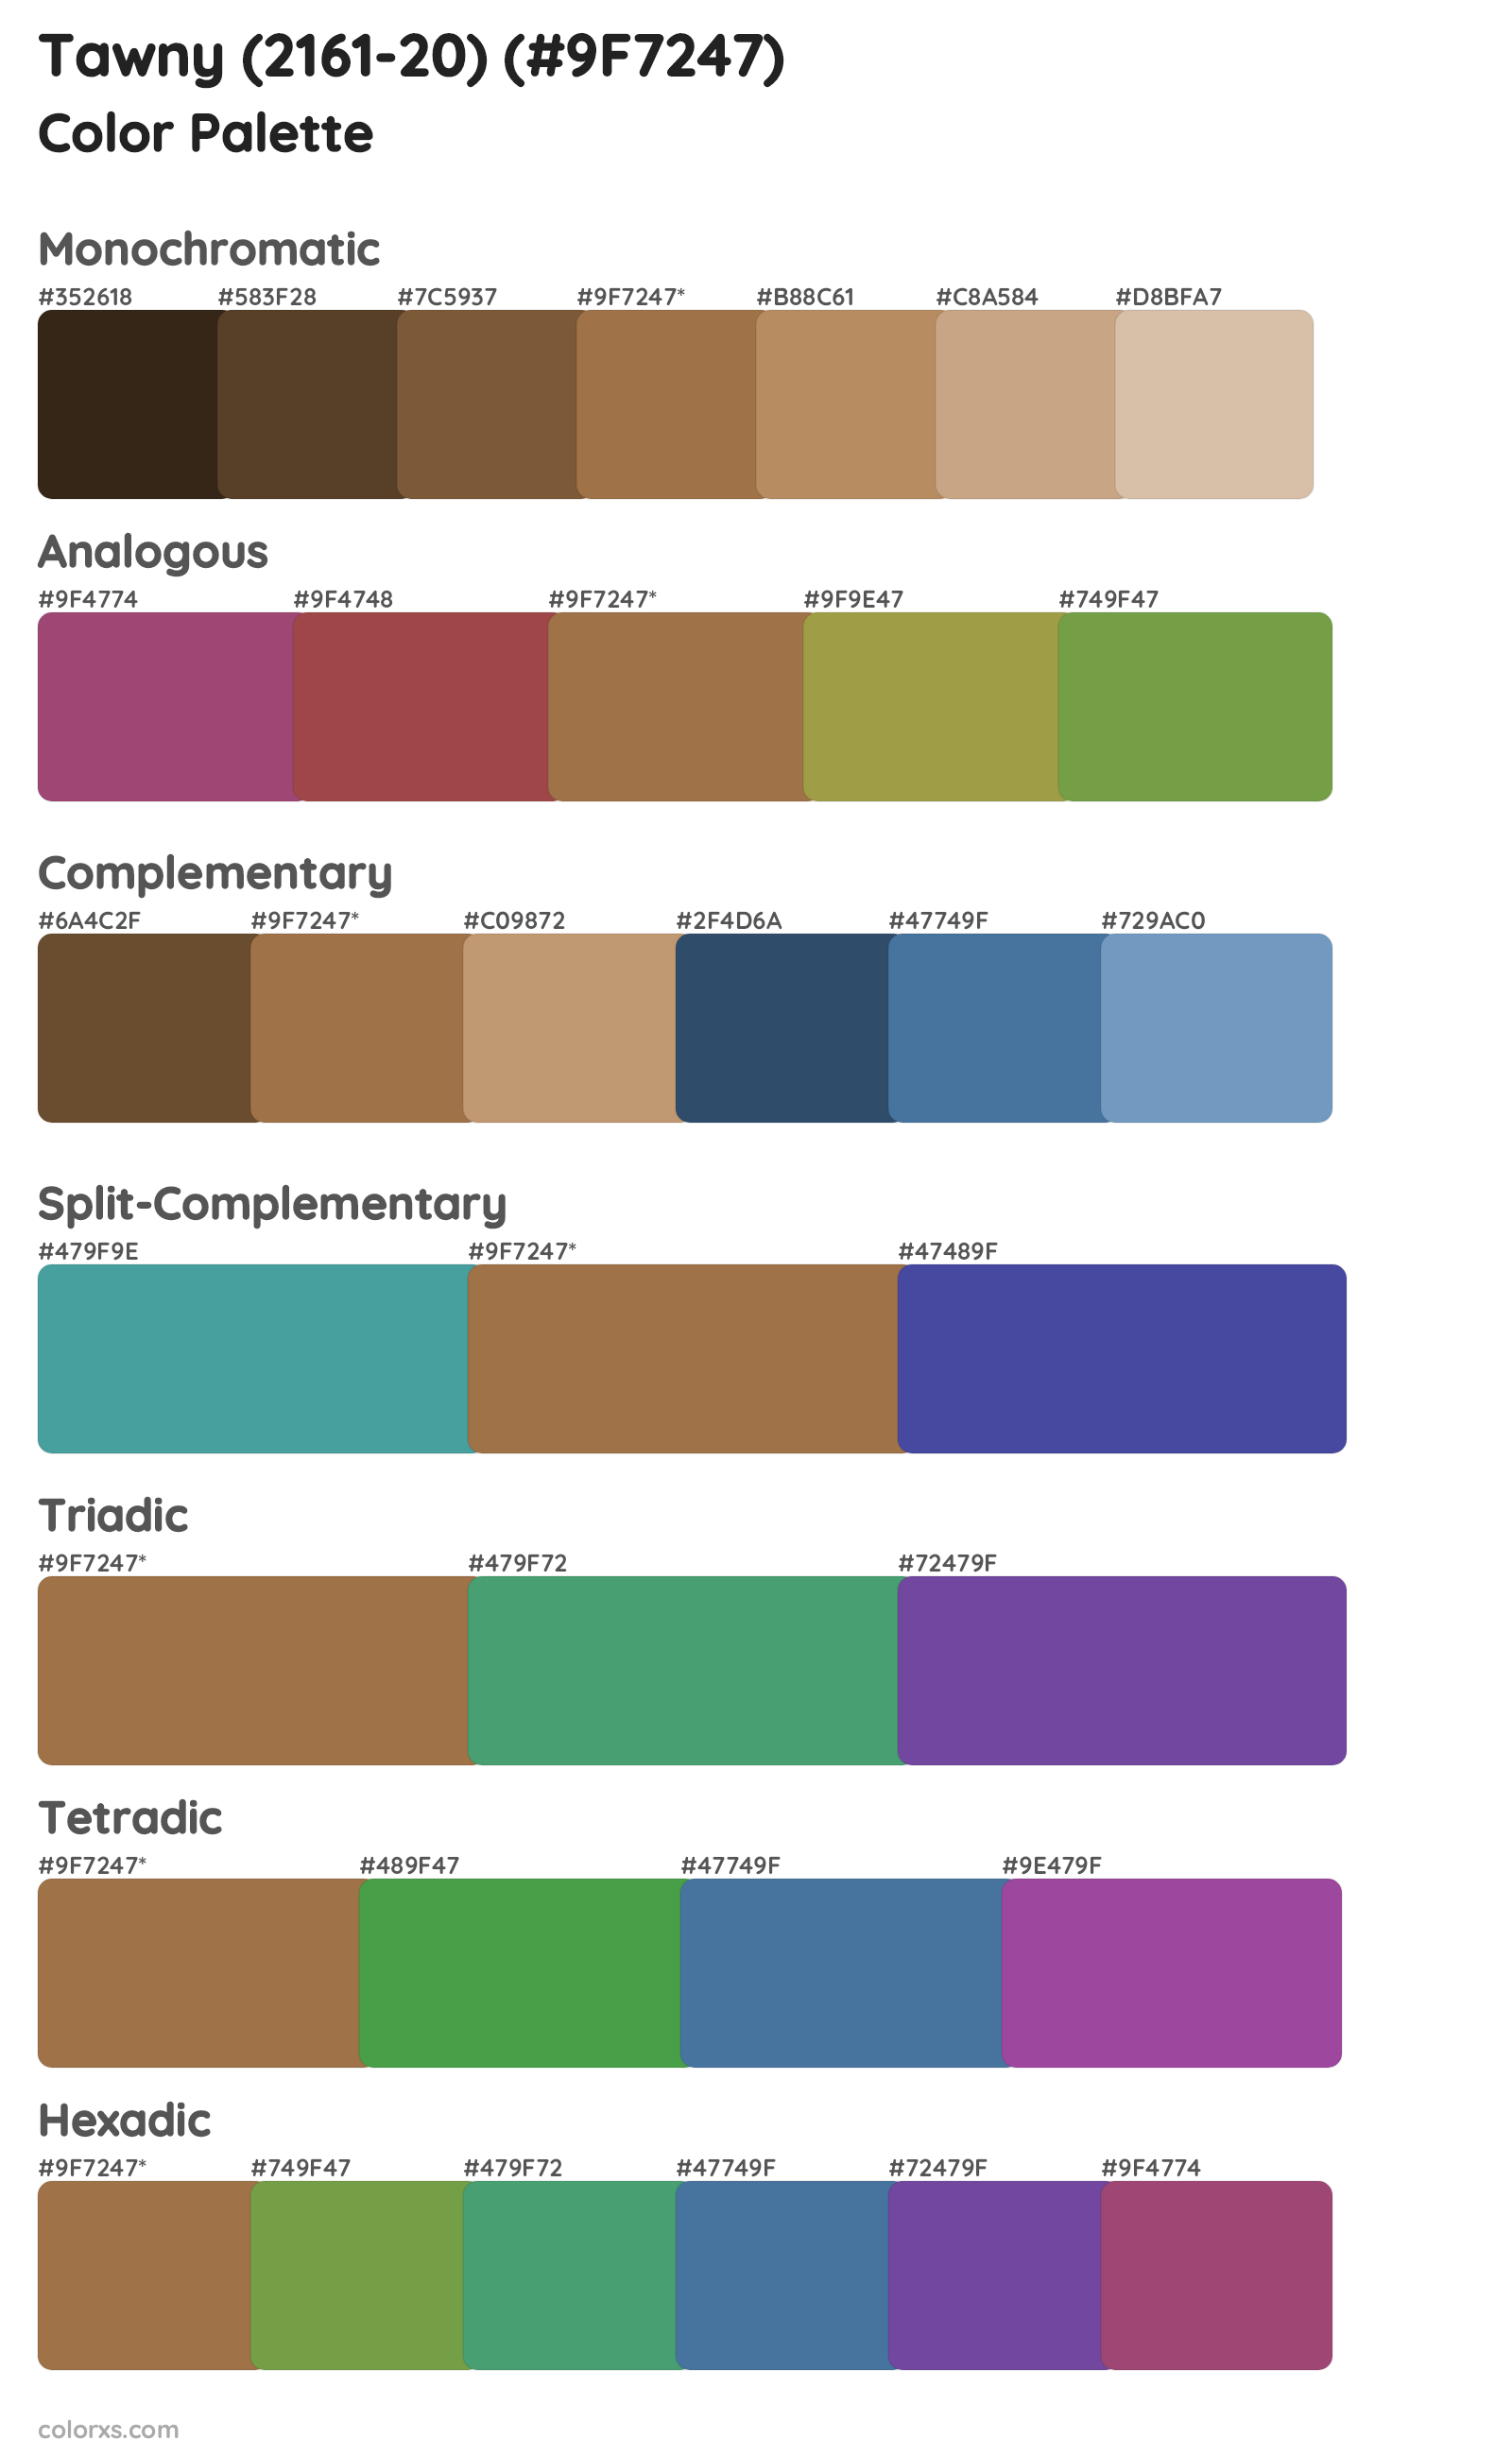 Tawny (2161-20) Color Scheme Palettes